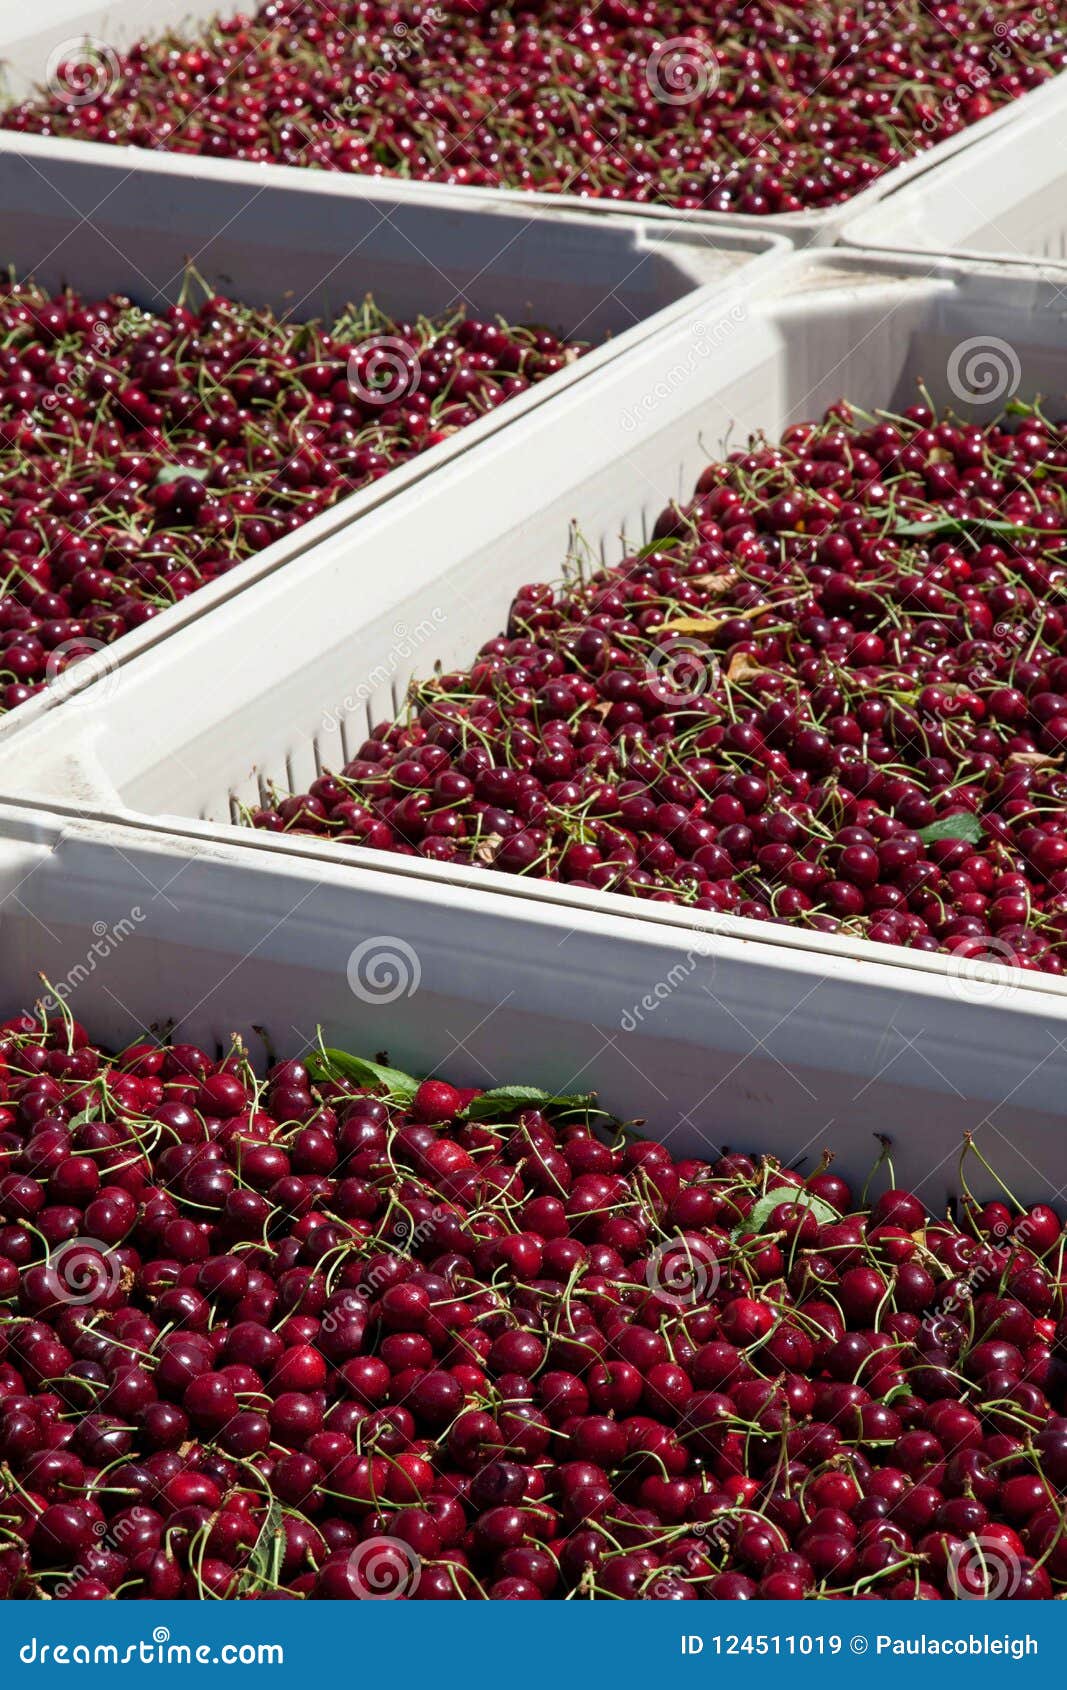 Lotes de cerejas maduras vermelhas nos escaninhos da colheita que sentam-se na luz do sol